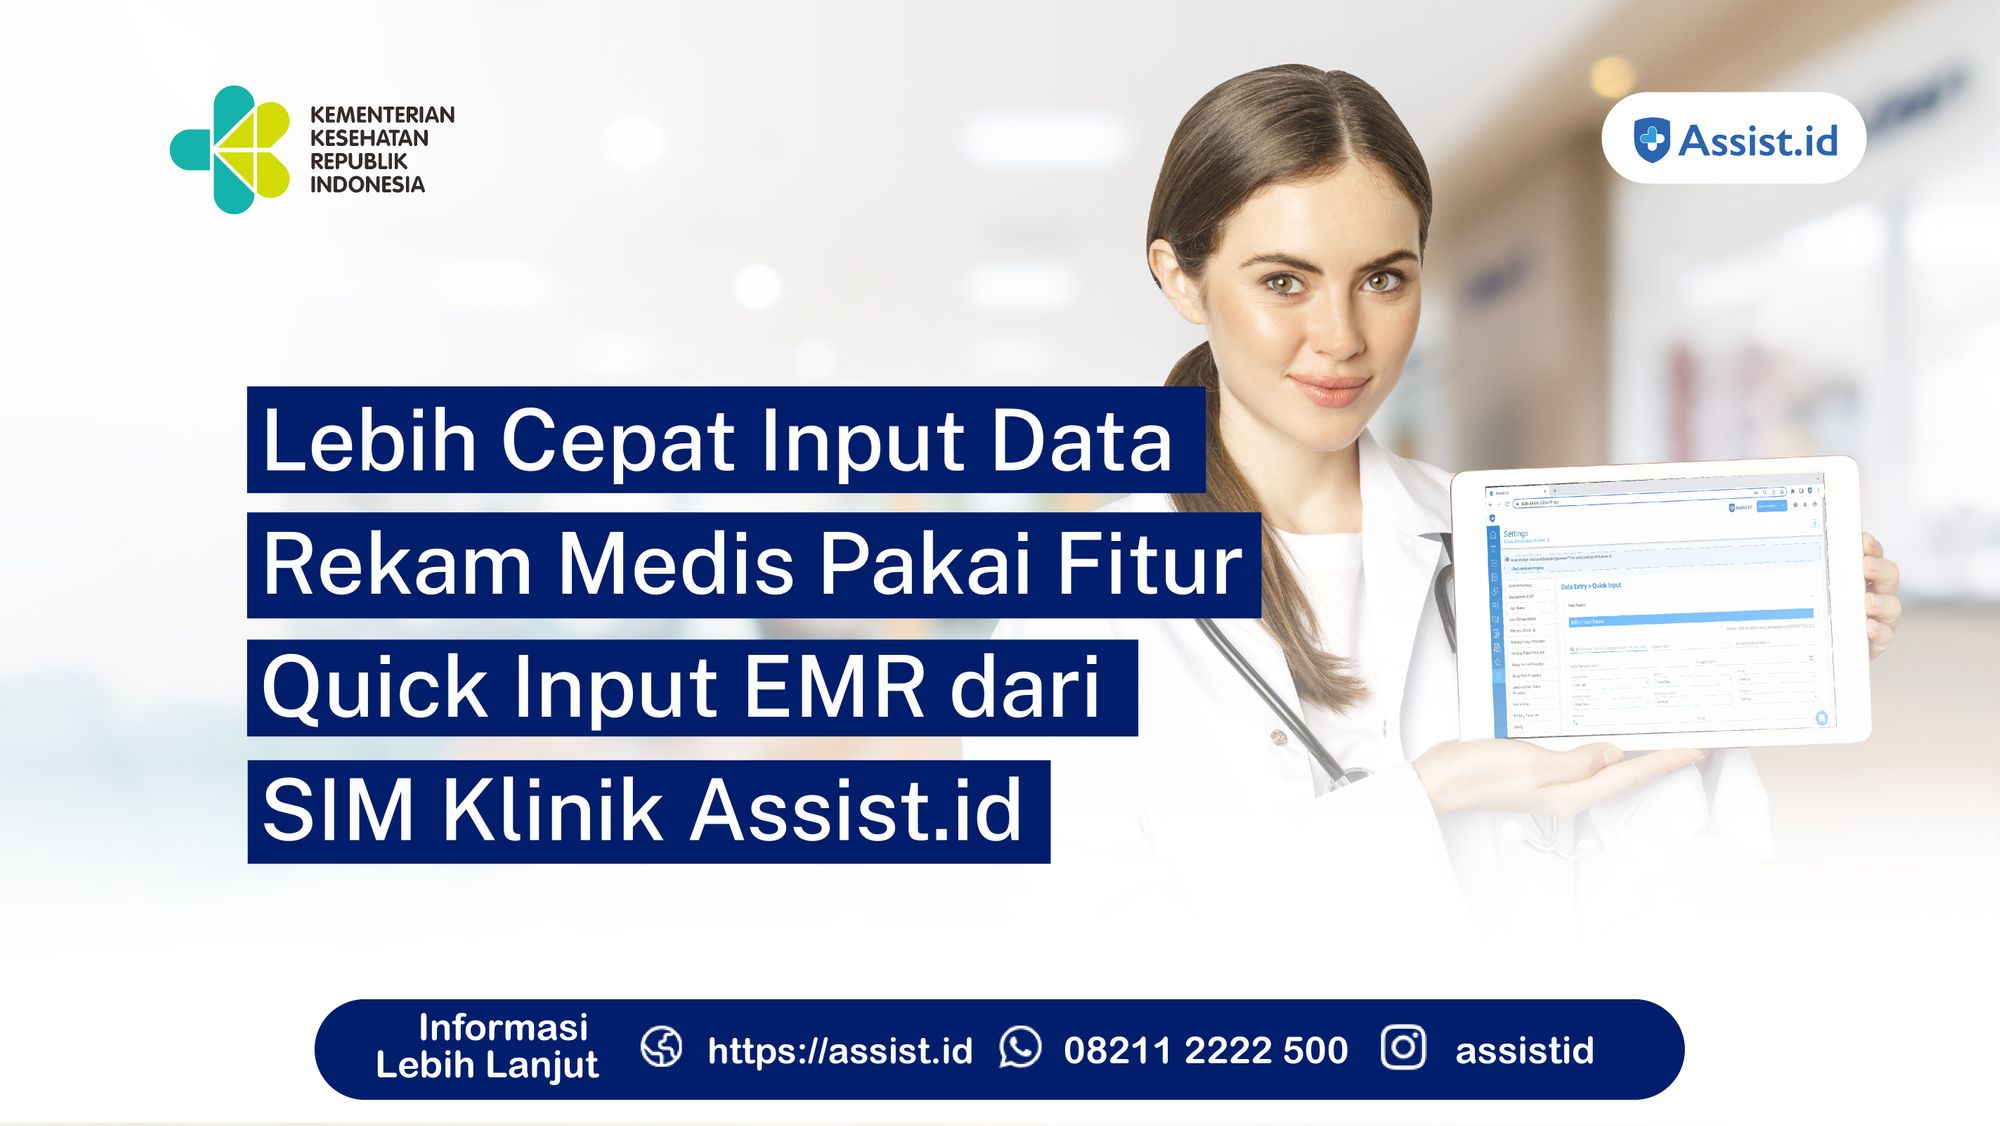 Lebih Cepat Input Data Rekam Medis Pakai Fitur Quick Input EMR dari SIM Klinik Assist.id